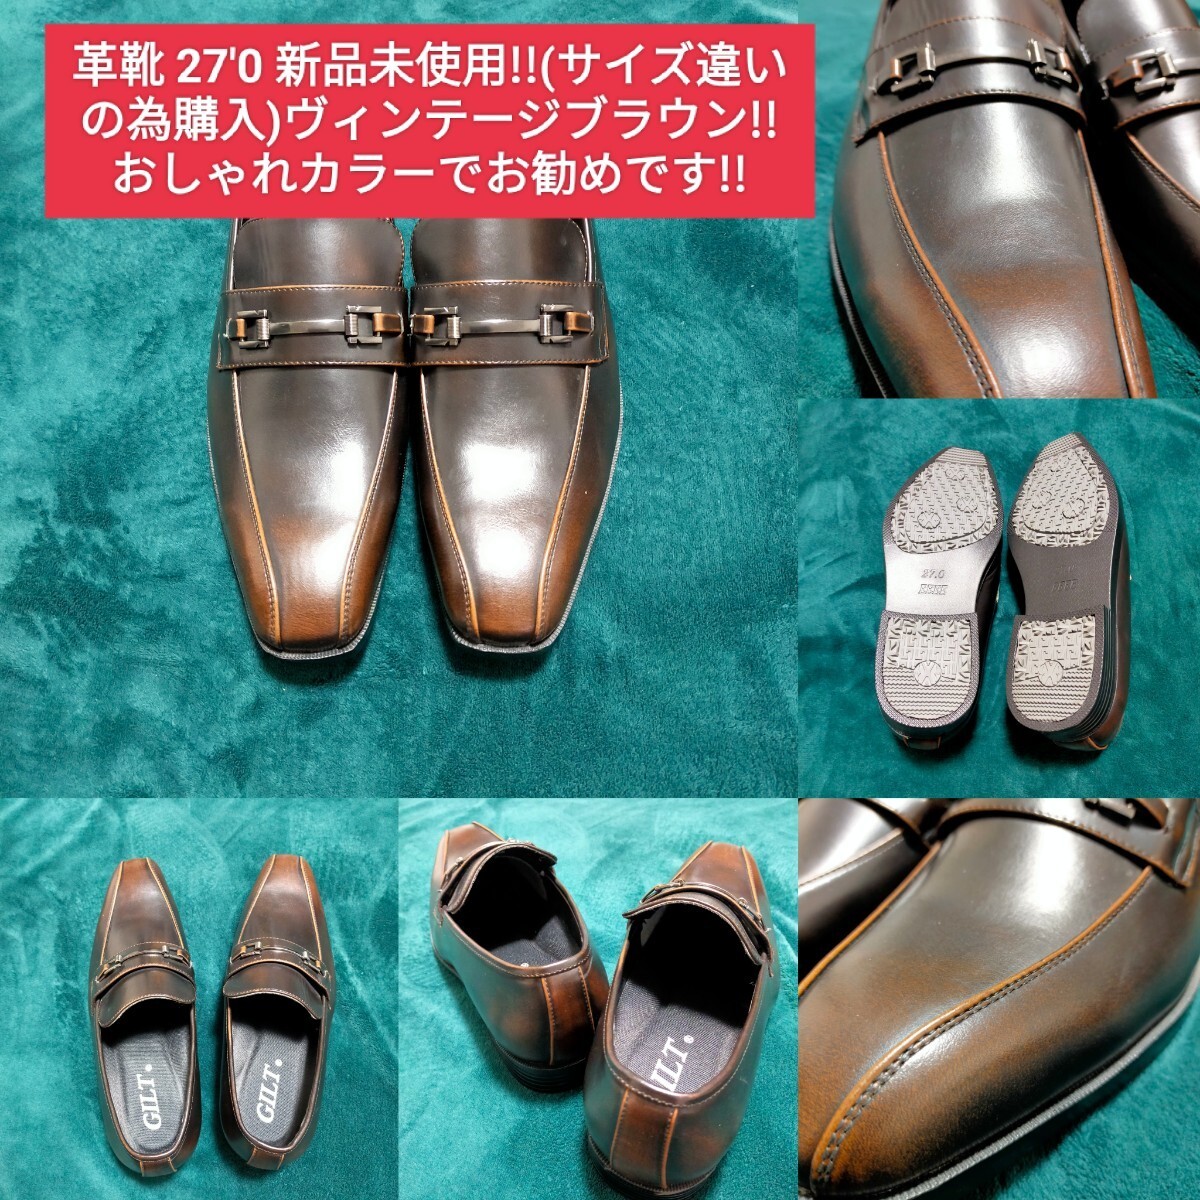 革靴 27'0 27㎝ 新品 未使用品 (サイズ違いの為に購入した靴) メンズシューズ ビジネスシューズ シューズ Men's 靴 の画像1